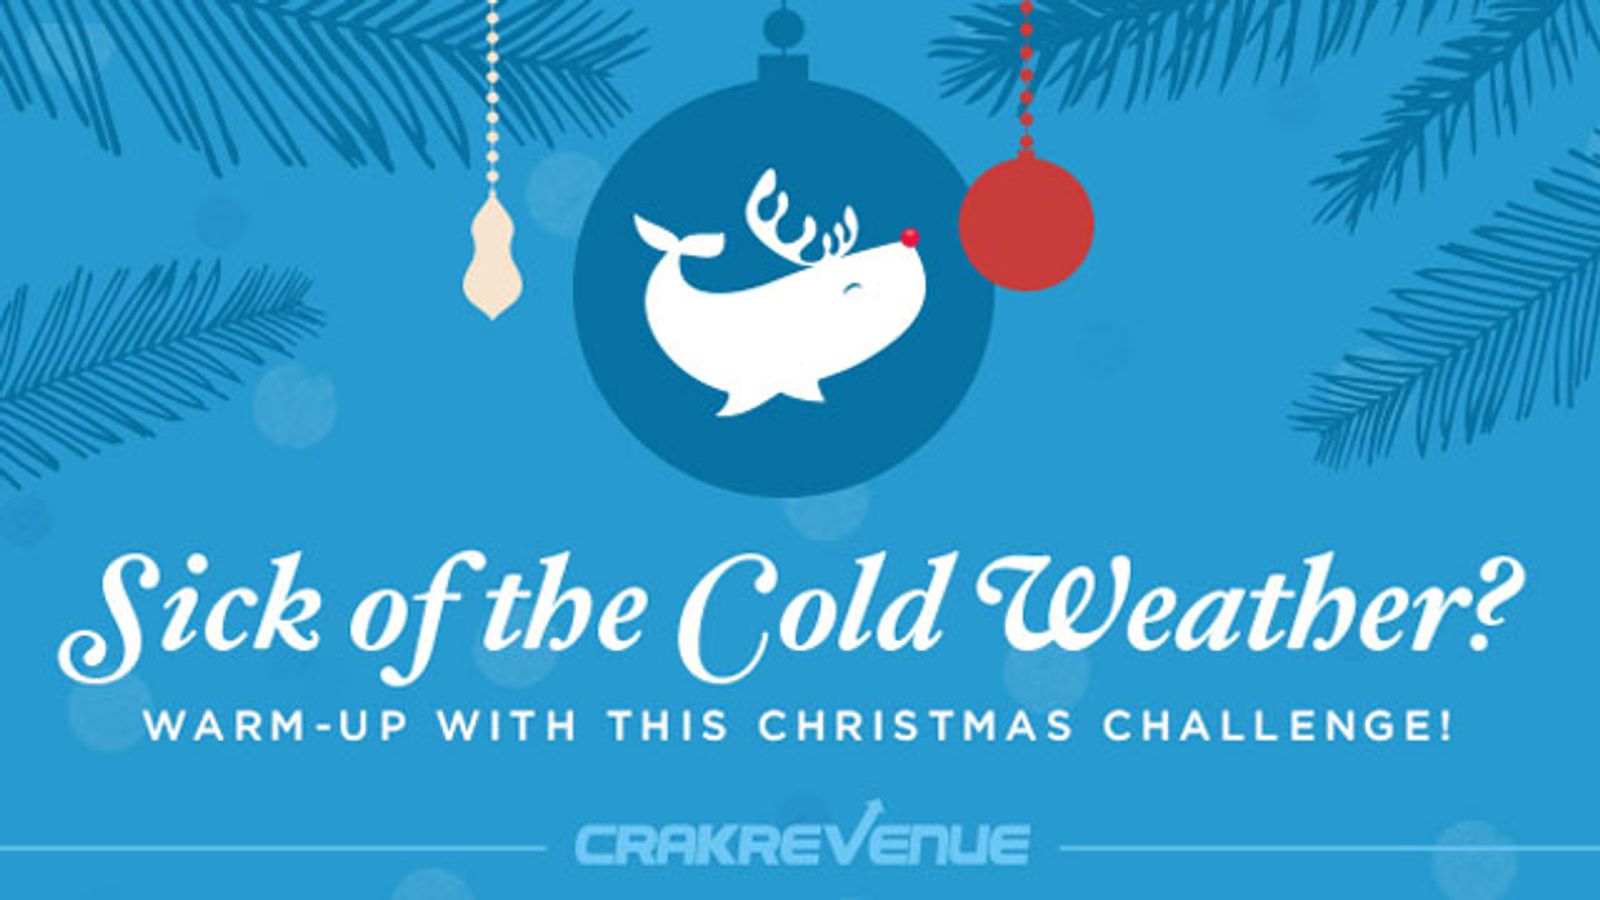 CrakRevenue Offering Cash Bonus Promo Throughout December